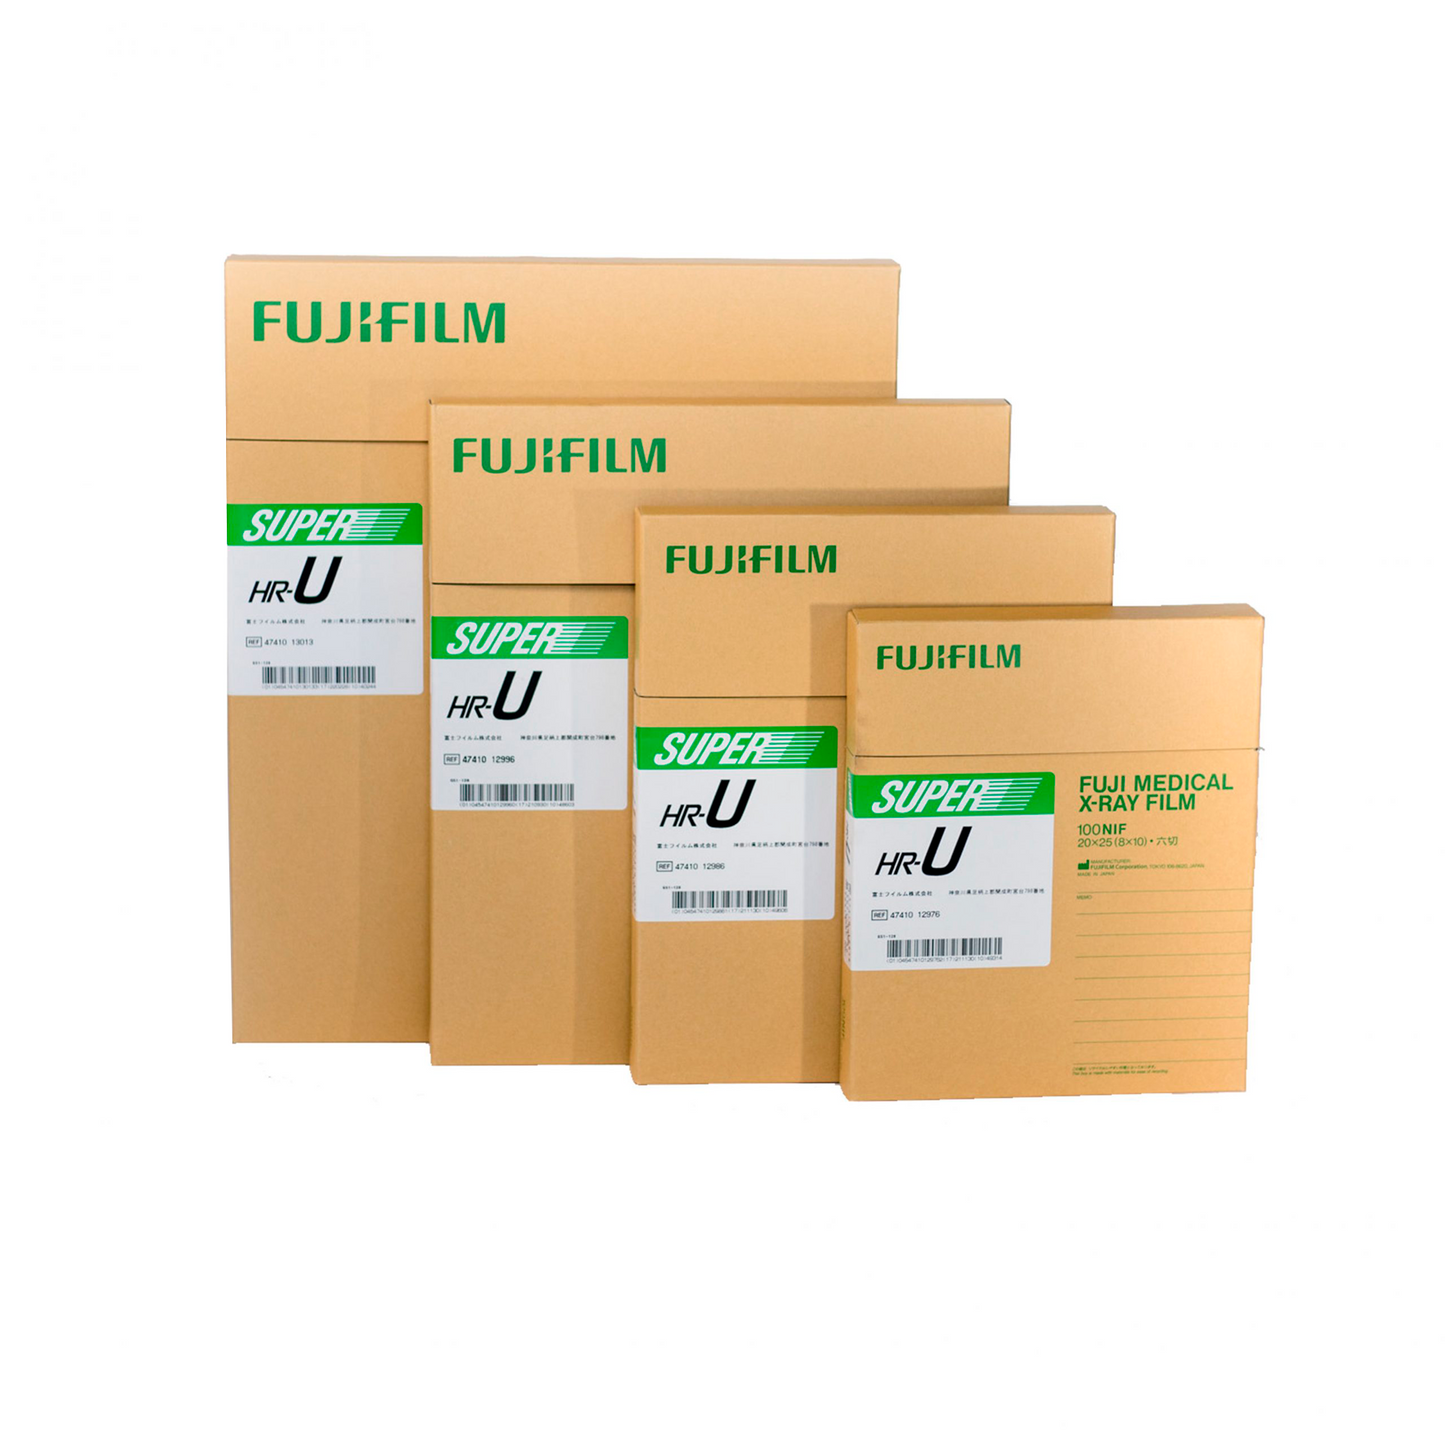 Película húmeda HR-U Fujifilm para radiología, garantiza imágenes de alta resolución, otorgando un control de calidad eficiente y óptimo de manejar.  